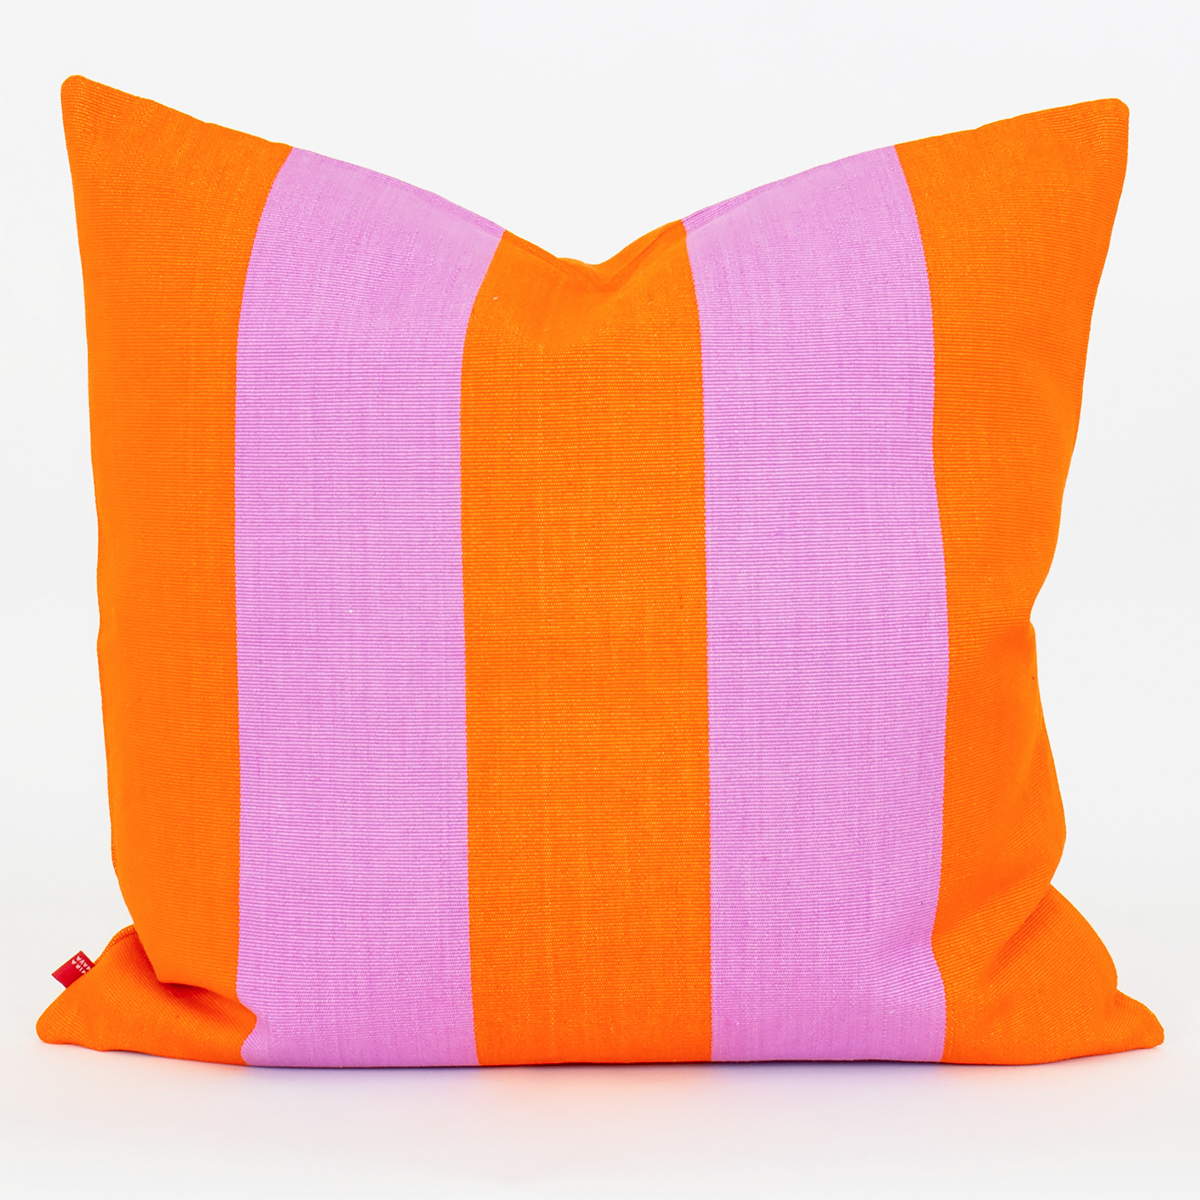 Pudebetræk “Fifi” fra Afroart – Orange/lilla (50×50 cm)